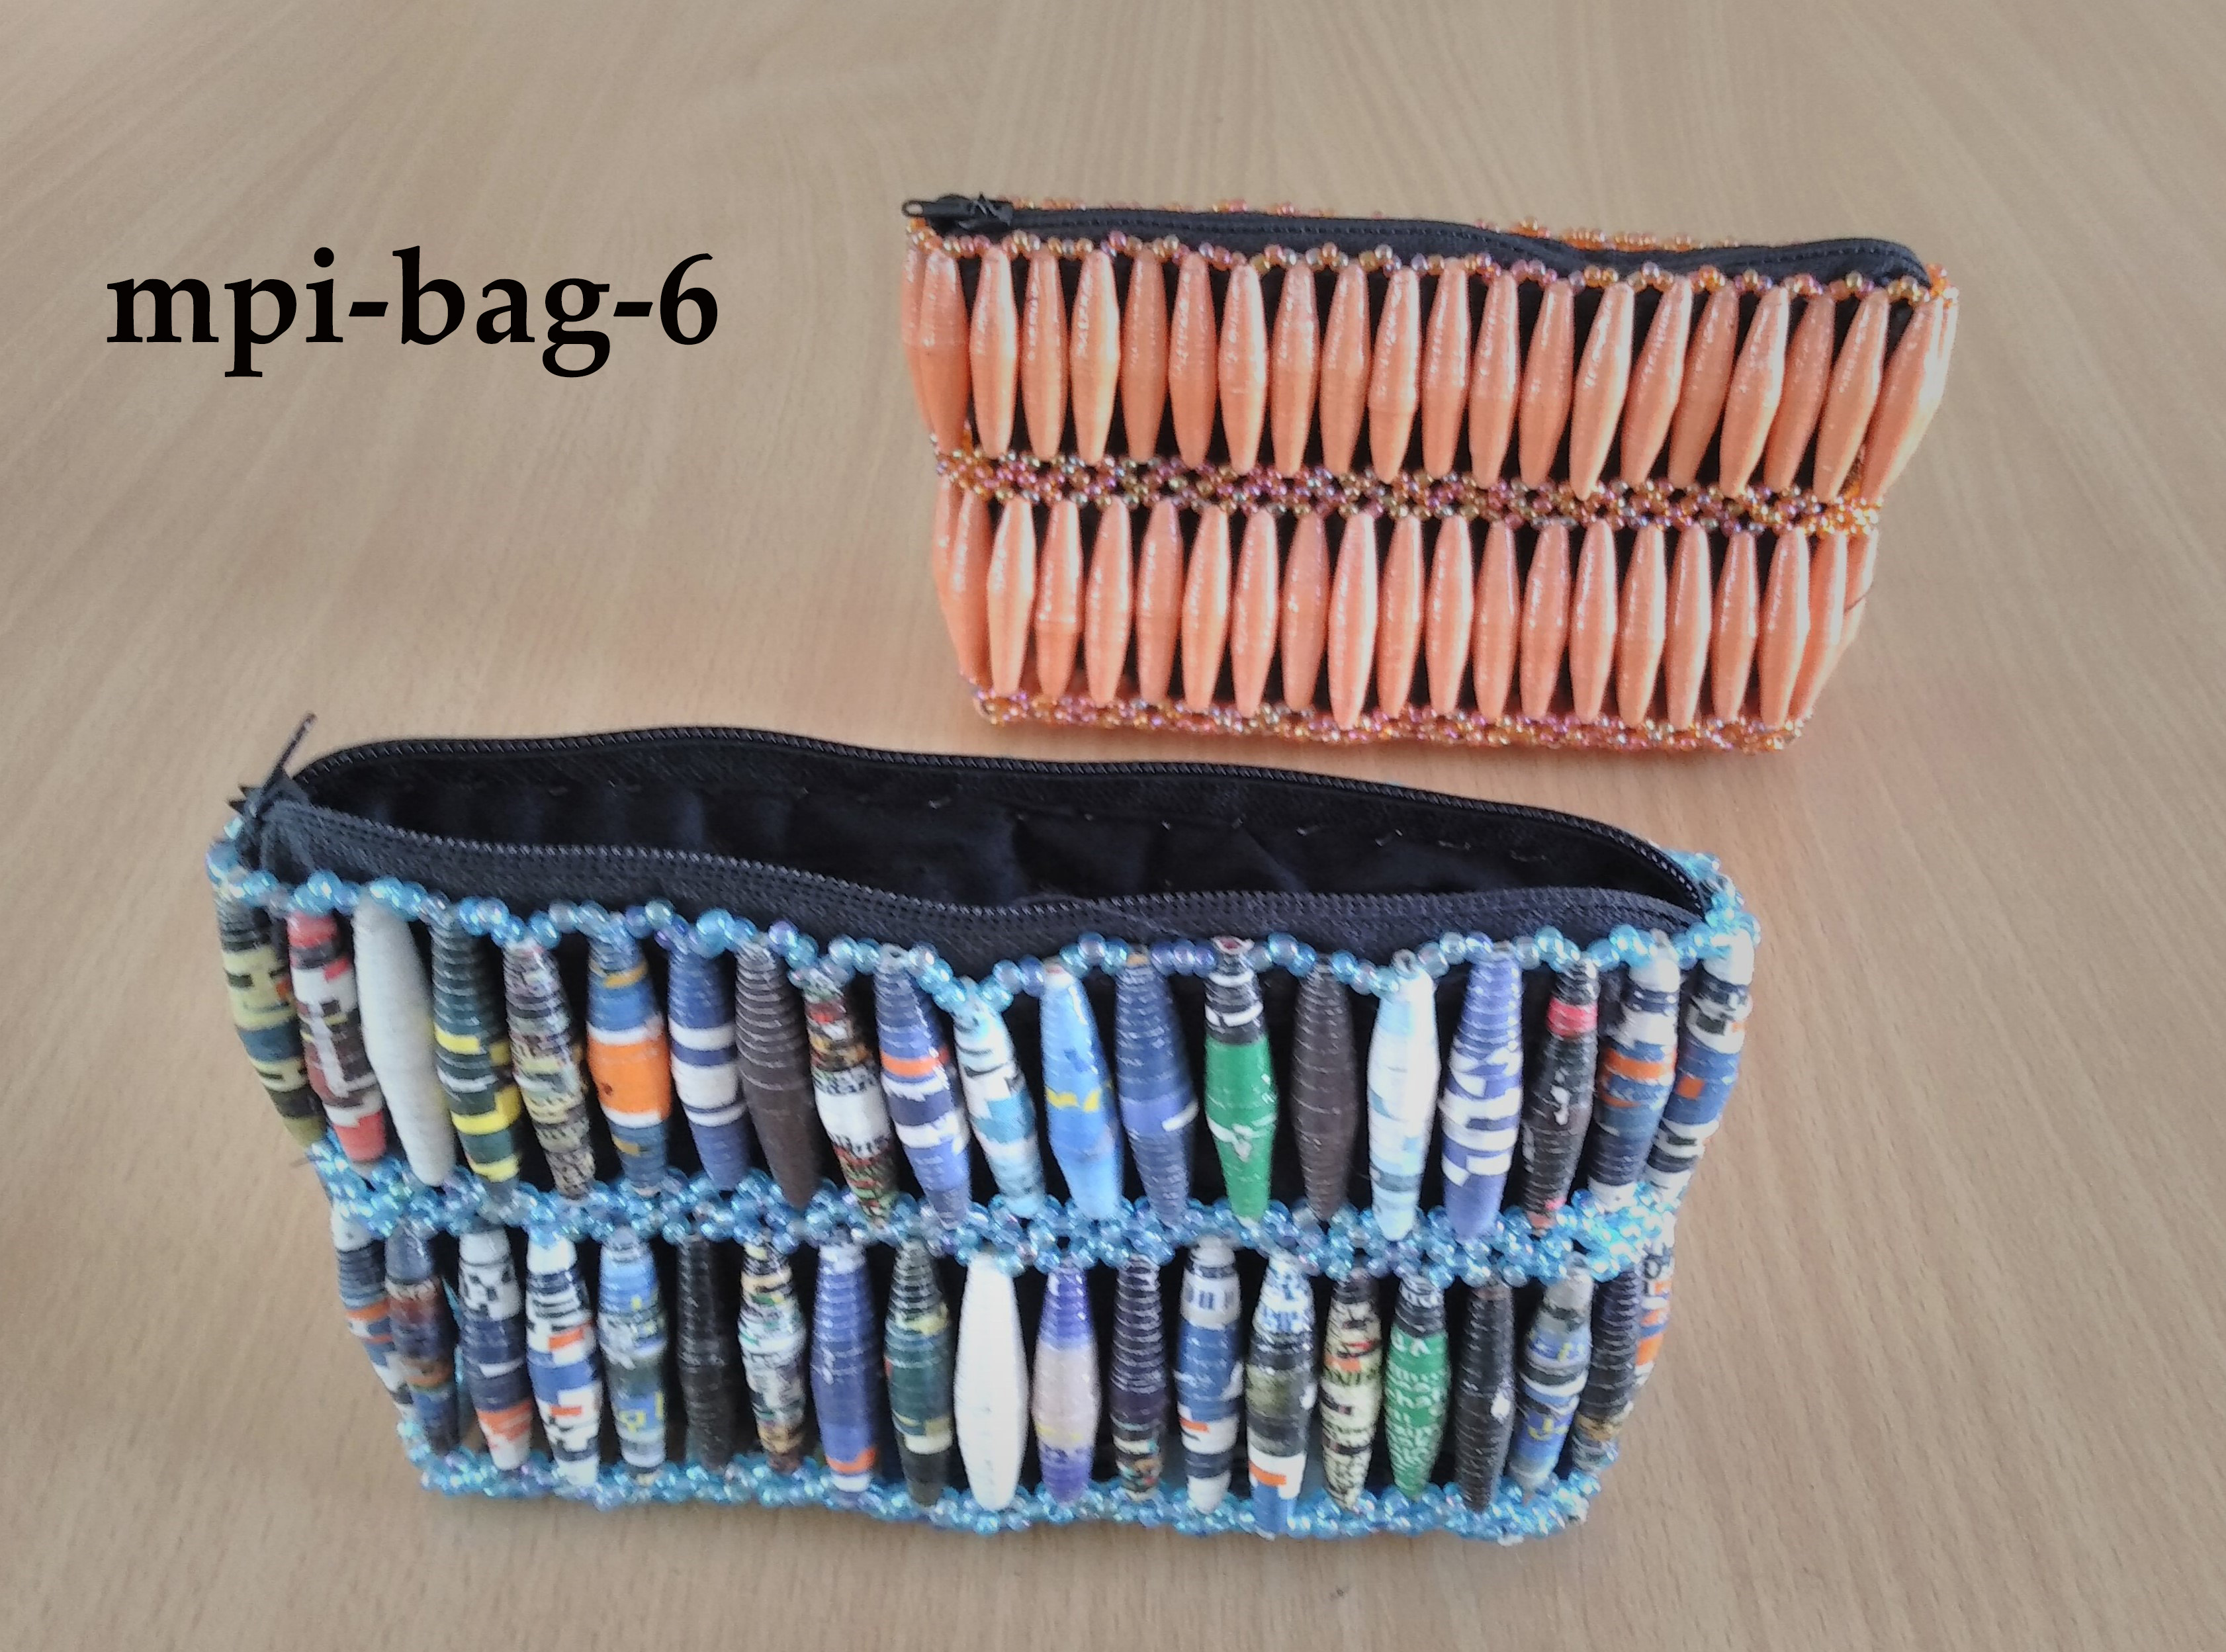 Bead pass bag (mpi-bag-6)